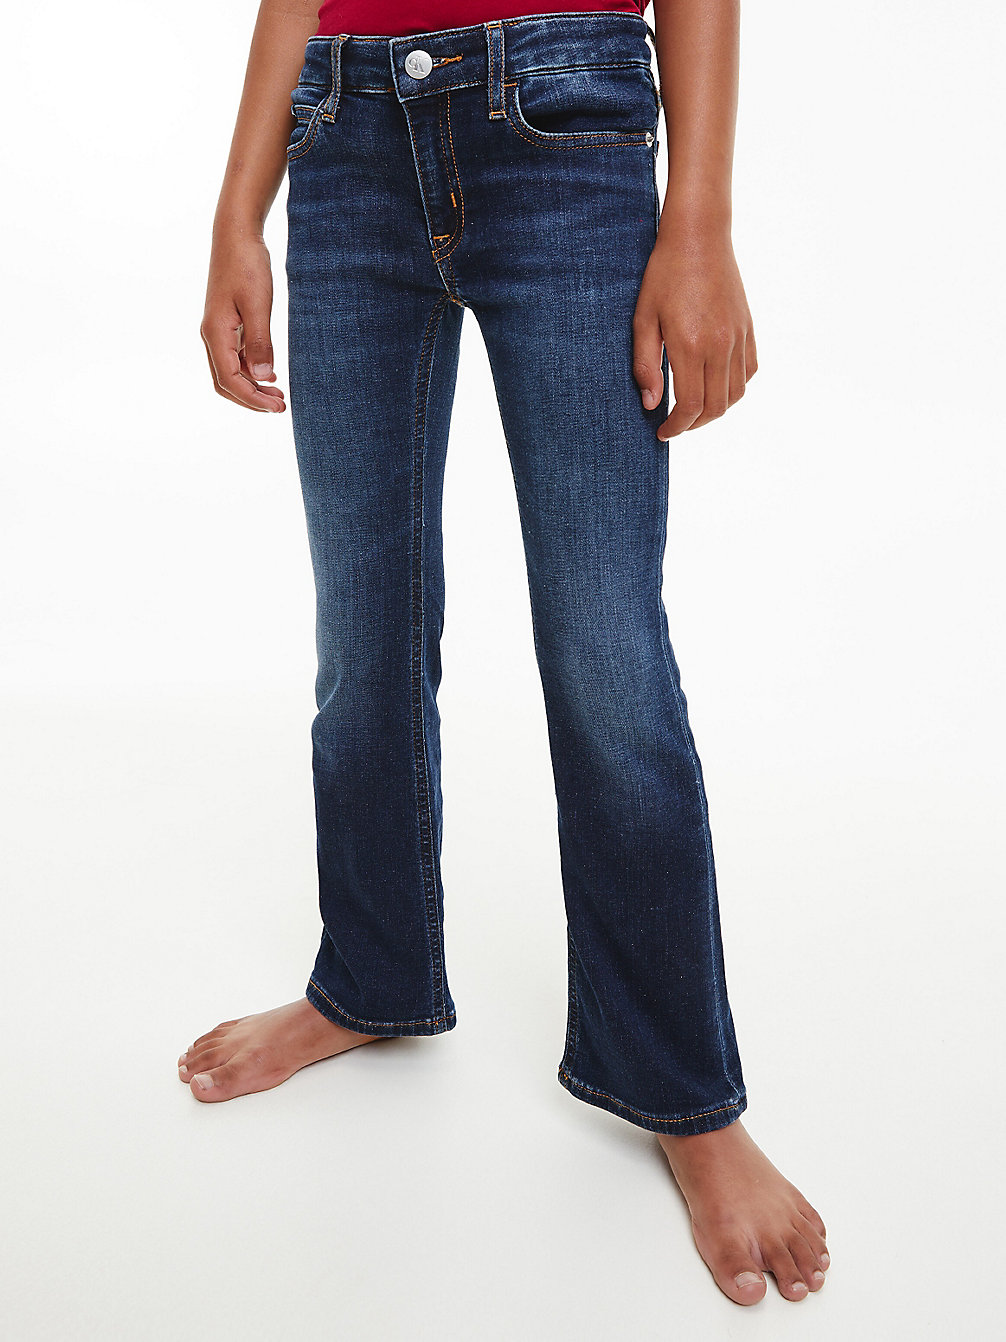 ESS DARK OCEAN BLUE Mid Rise Flared Jeans undefined girls Calvin Klein